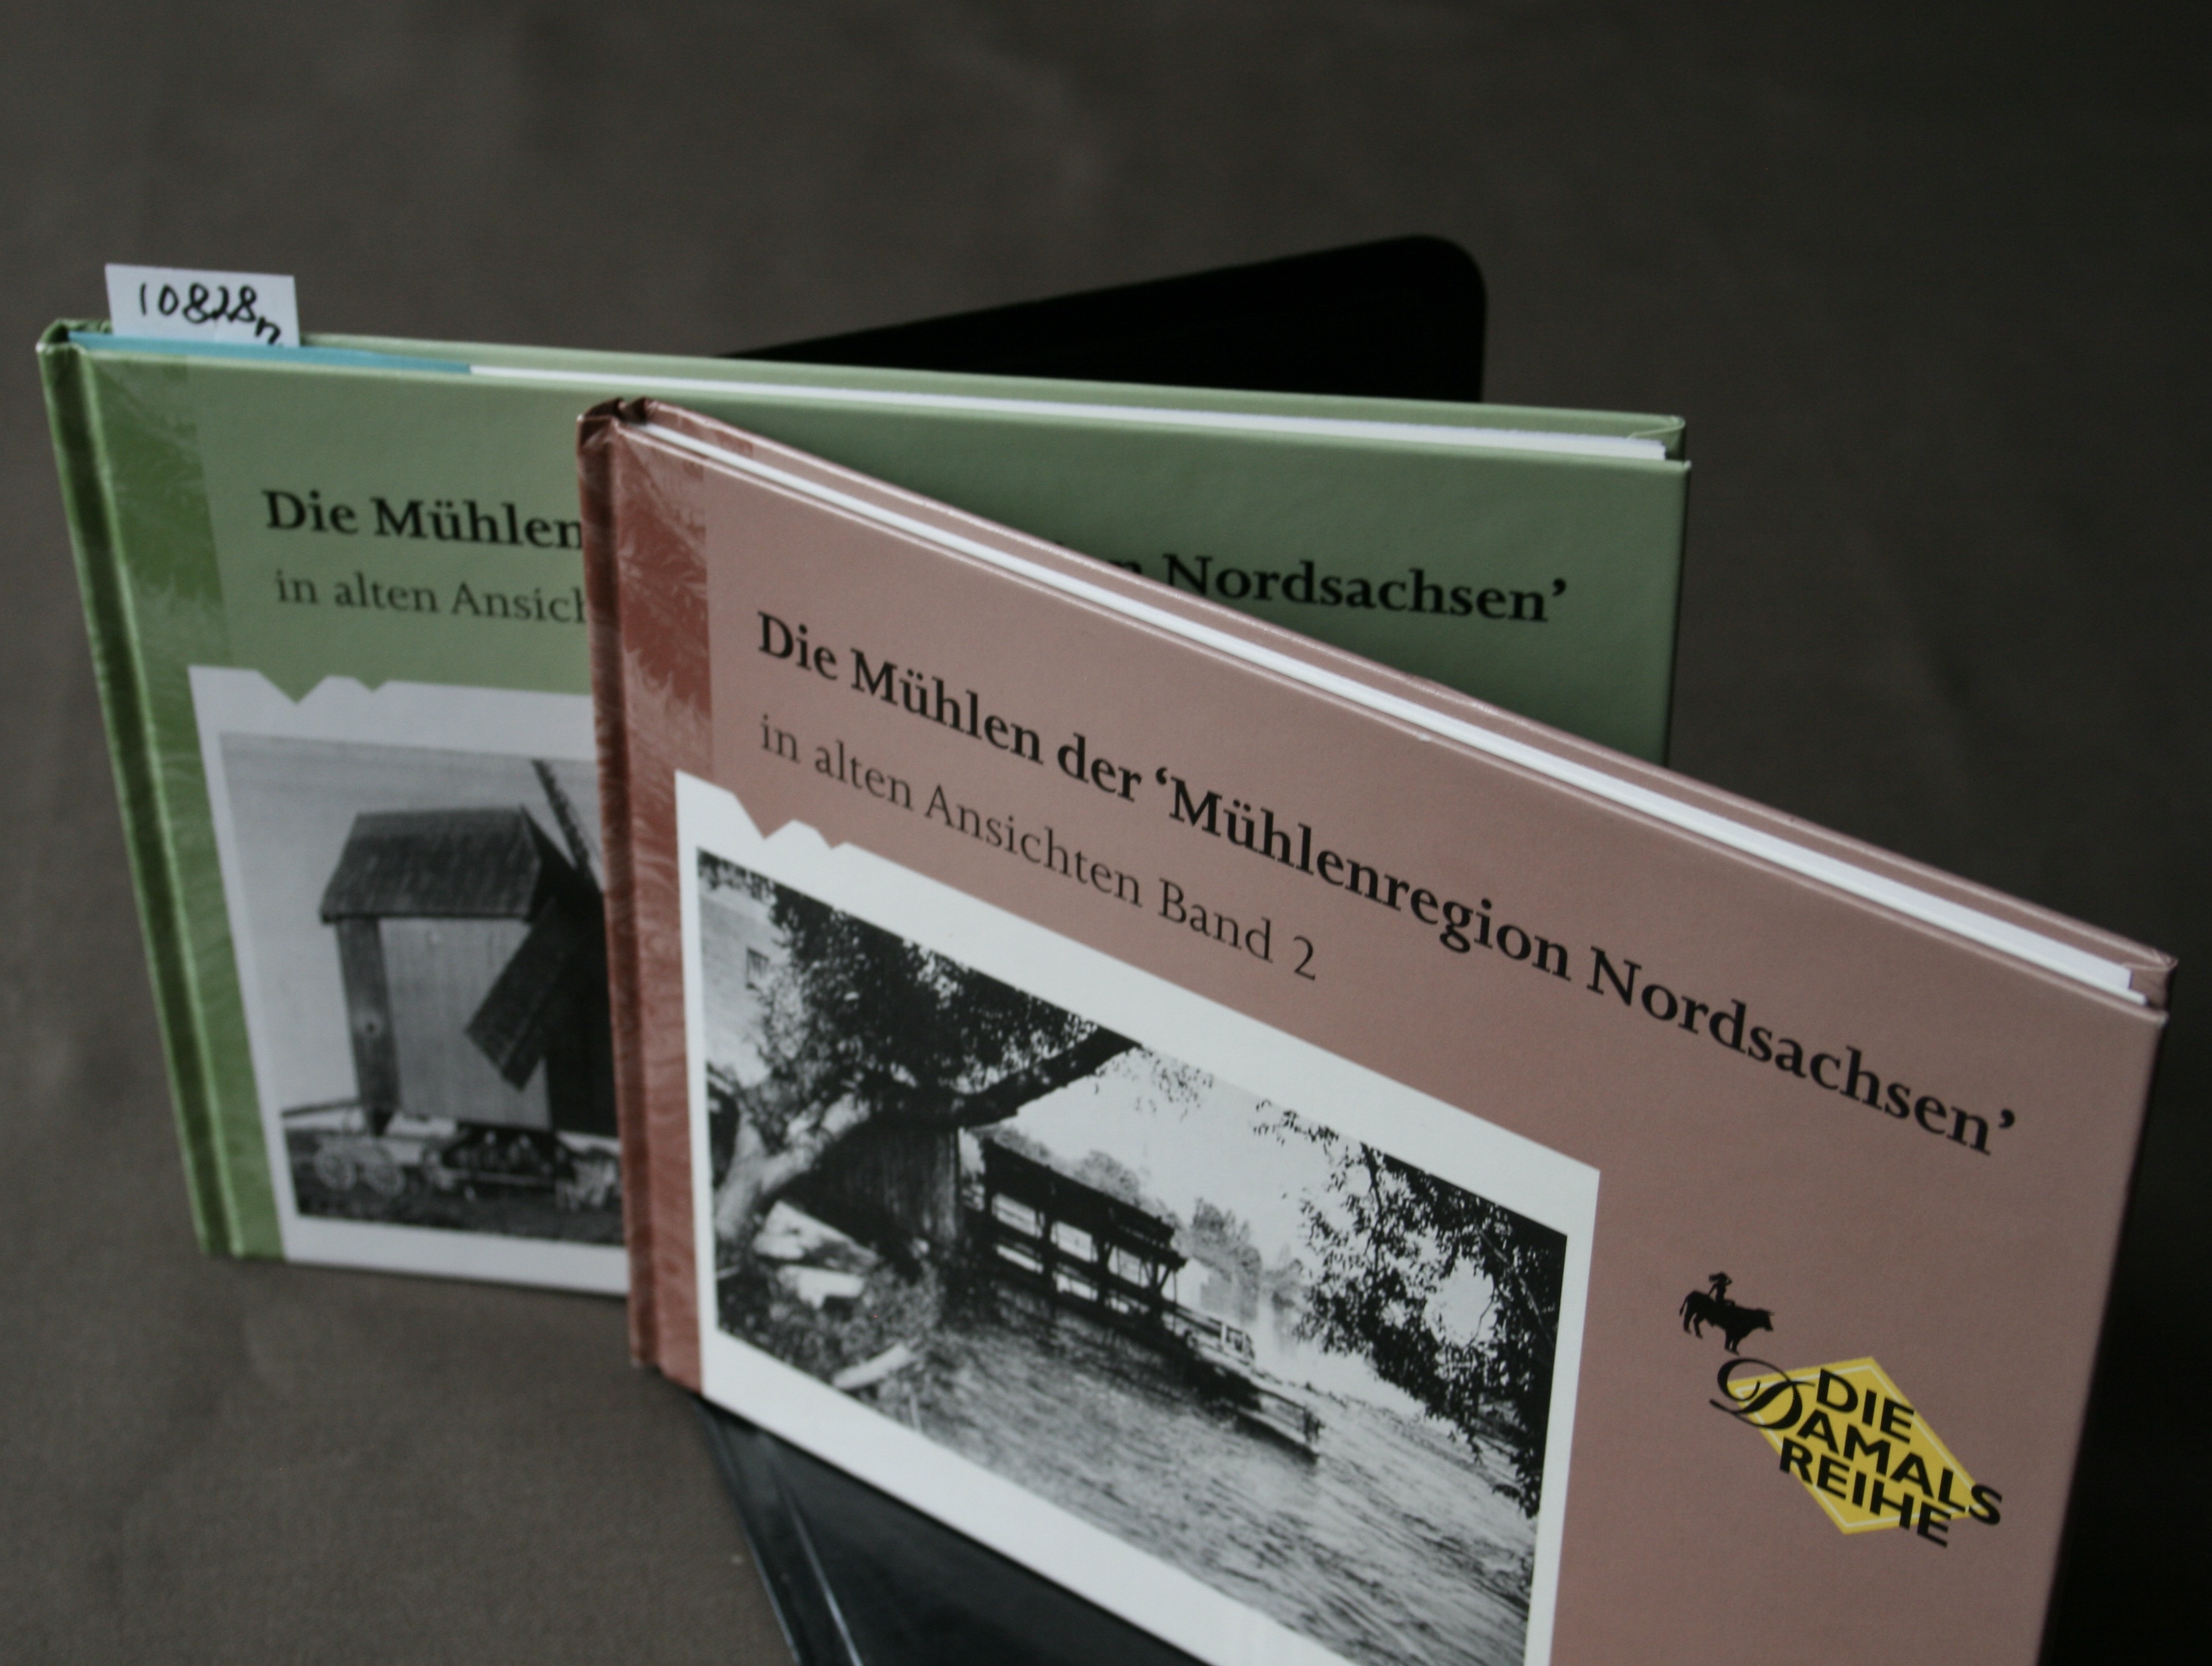 Die Mühlen der Mühlenregion Nordsachsen in alten Ansichten. 2 Bände. - Wilde, Manfred und Hans-Joachim Böttcher